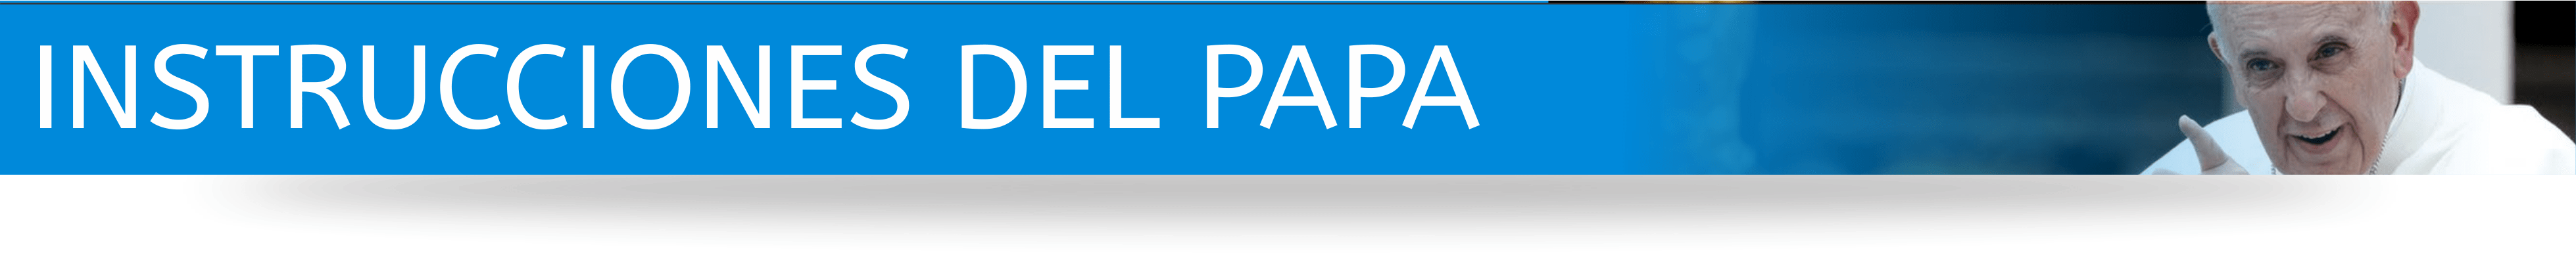 ttl-instrucciones-papa